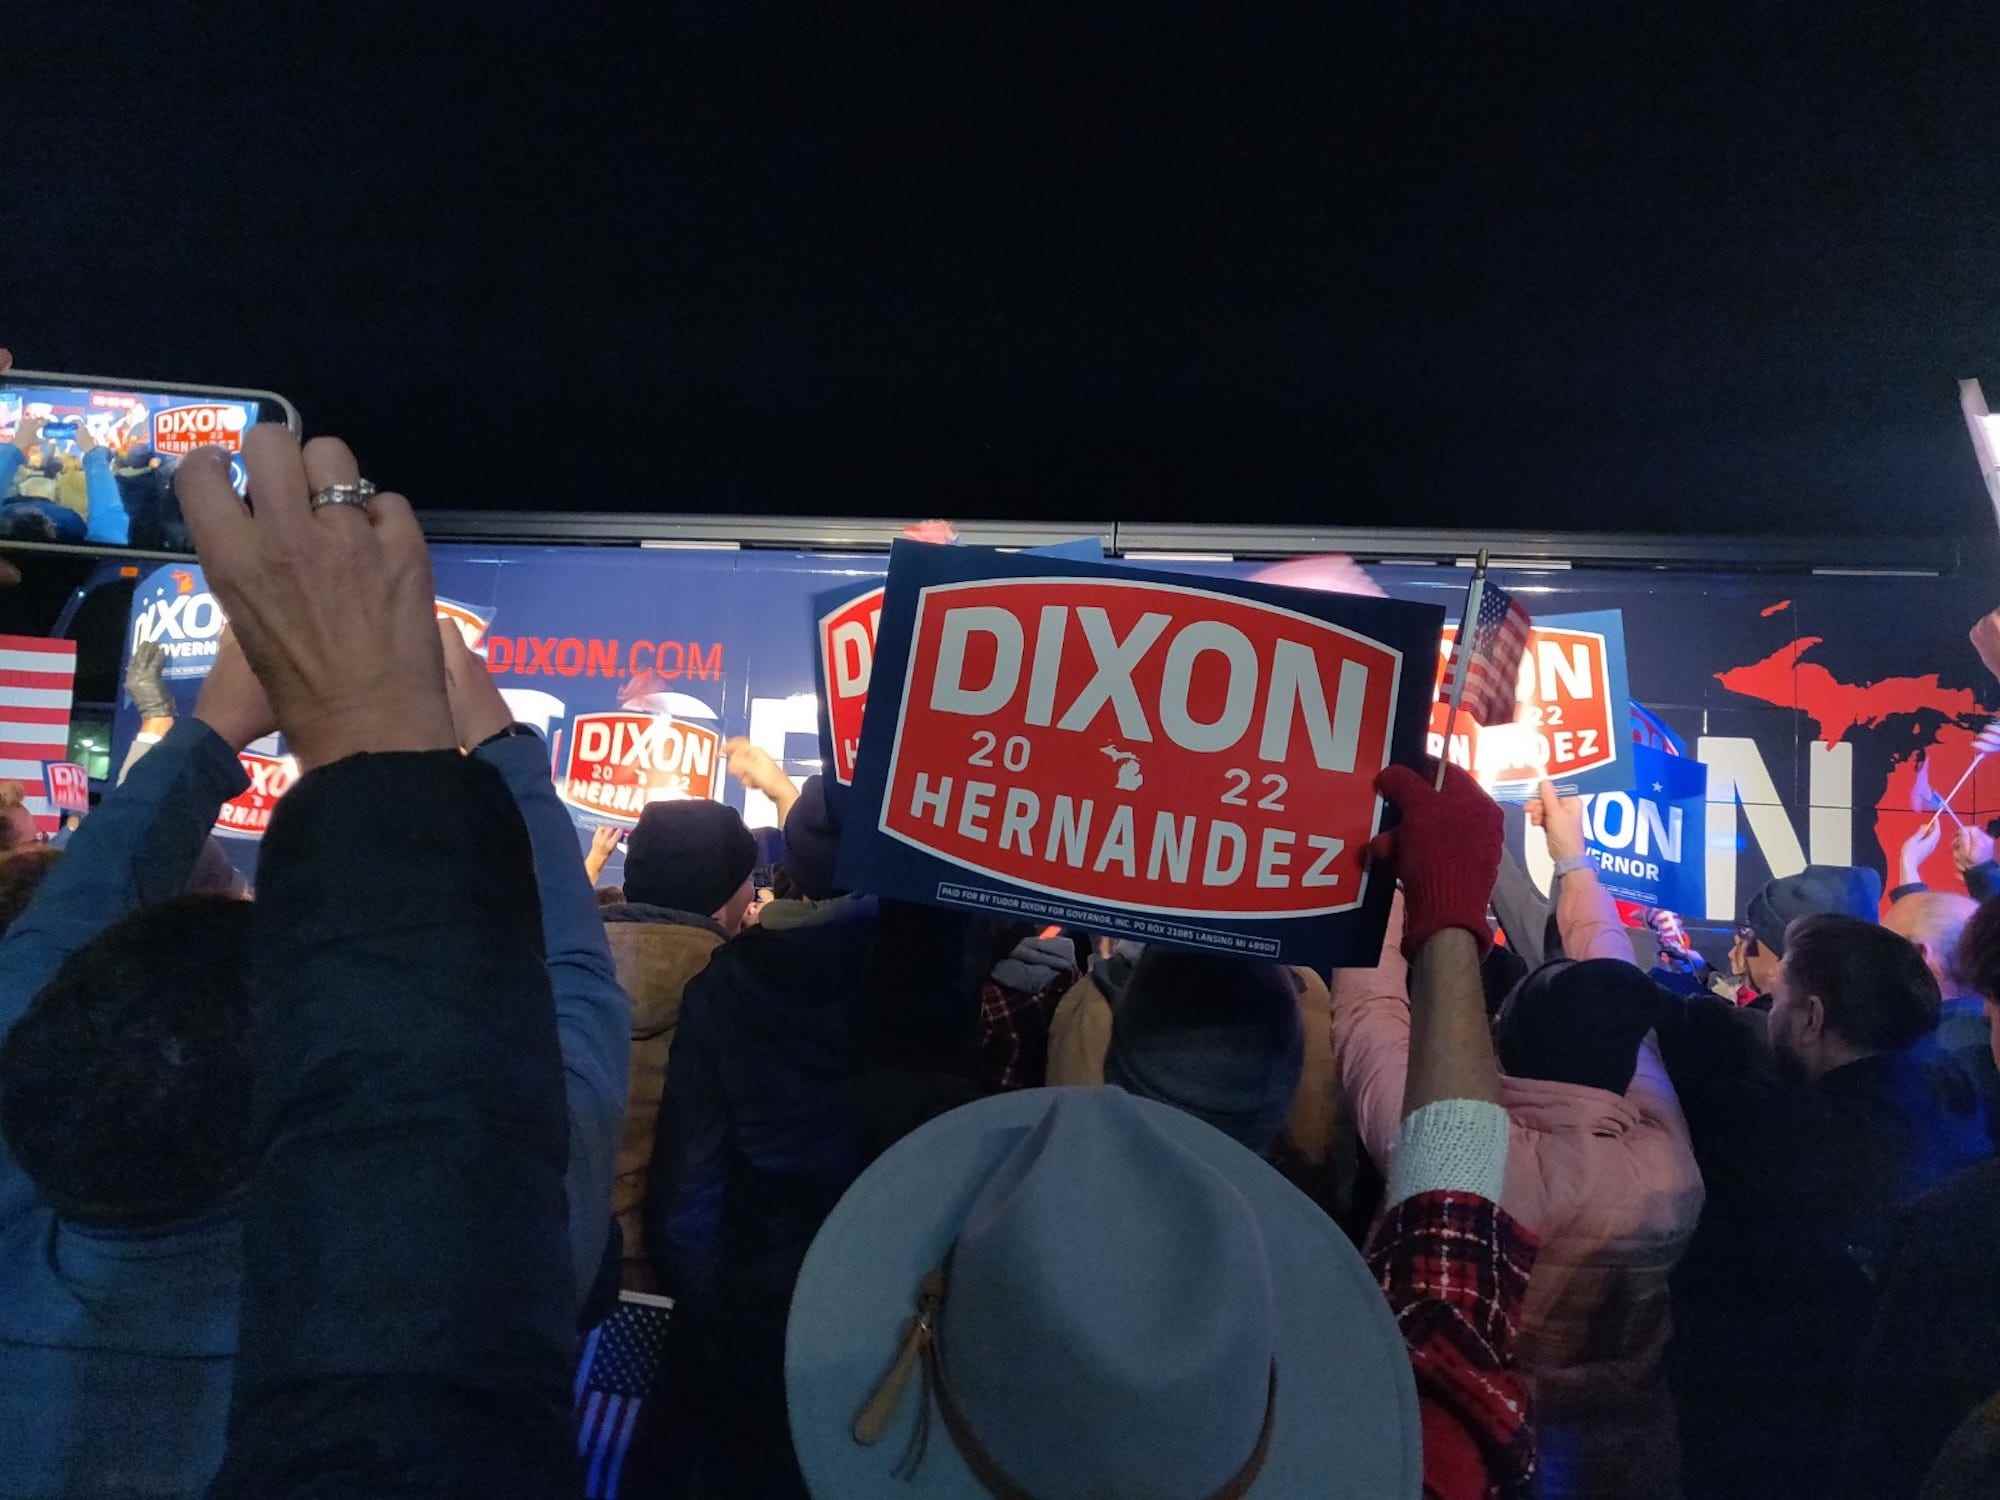 Ein Republikaner aus Michigan winkt während einer Wahlkampfkundgebung in Grand Rapids, Michigan, am 7. November 2022 mit einem Dixon-Hernandez-2022-Schild.